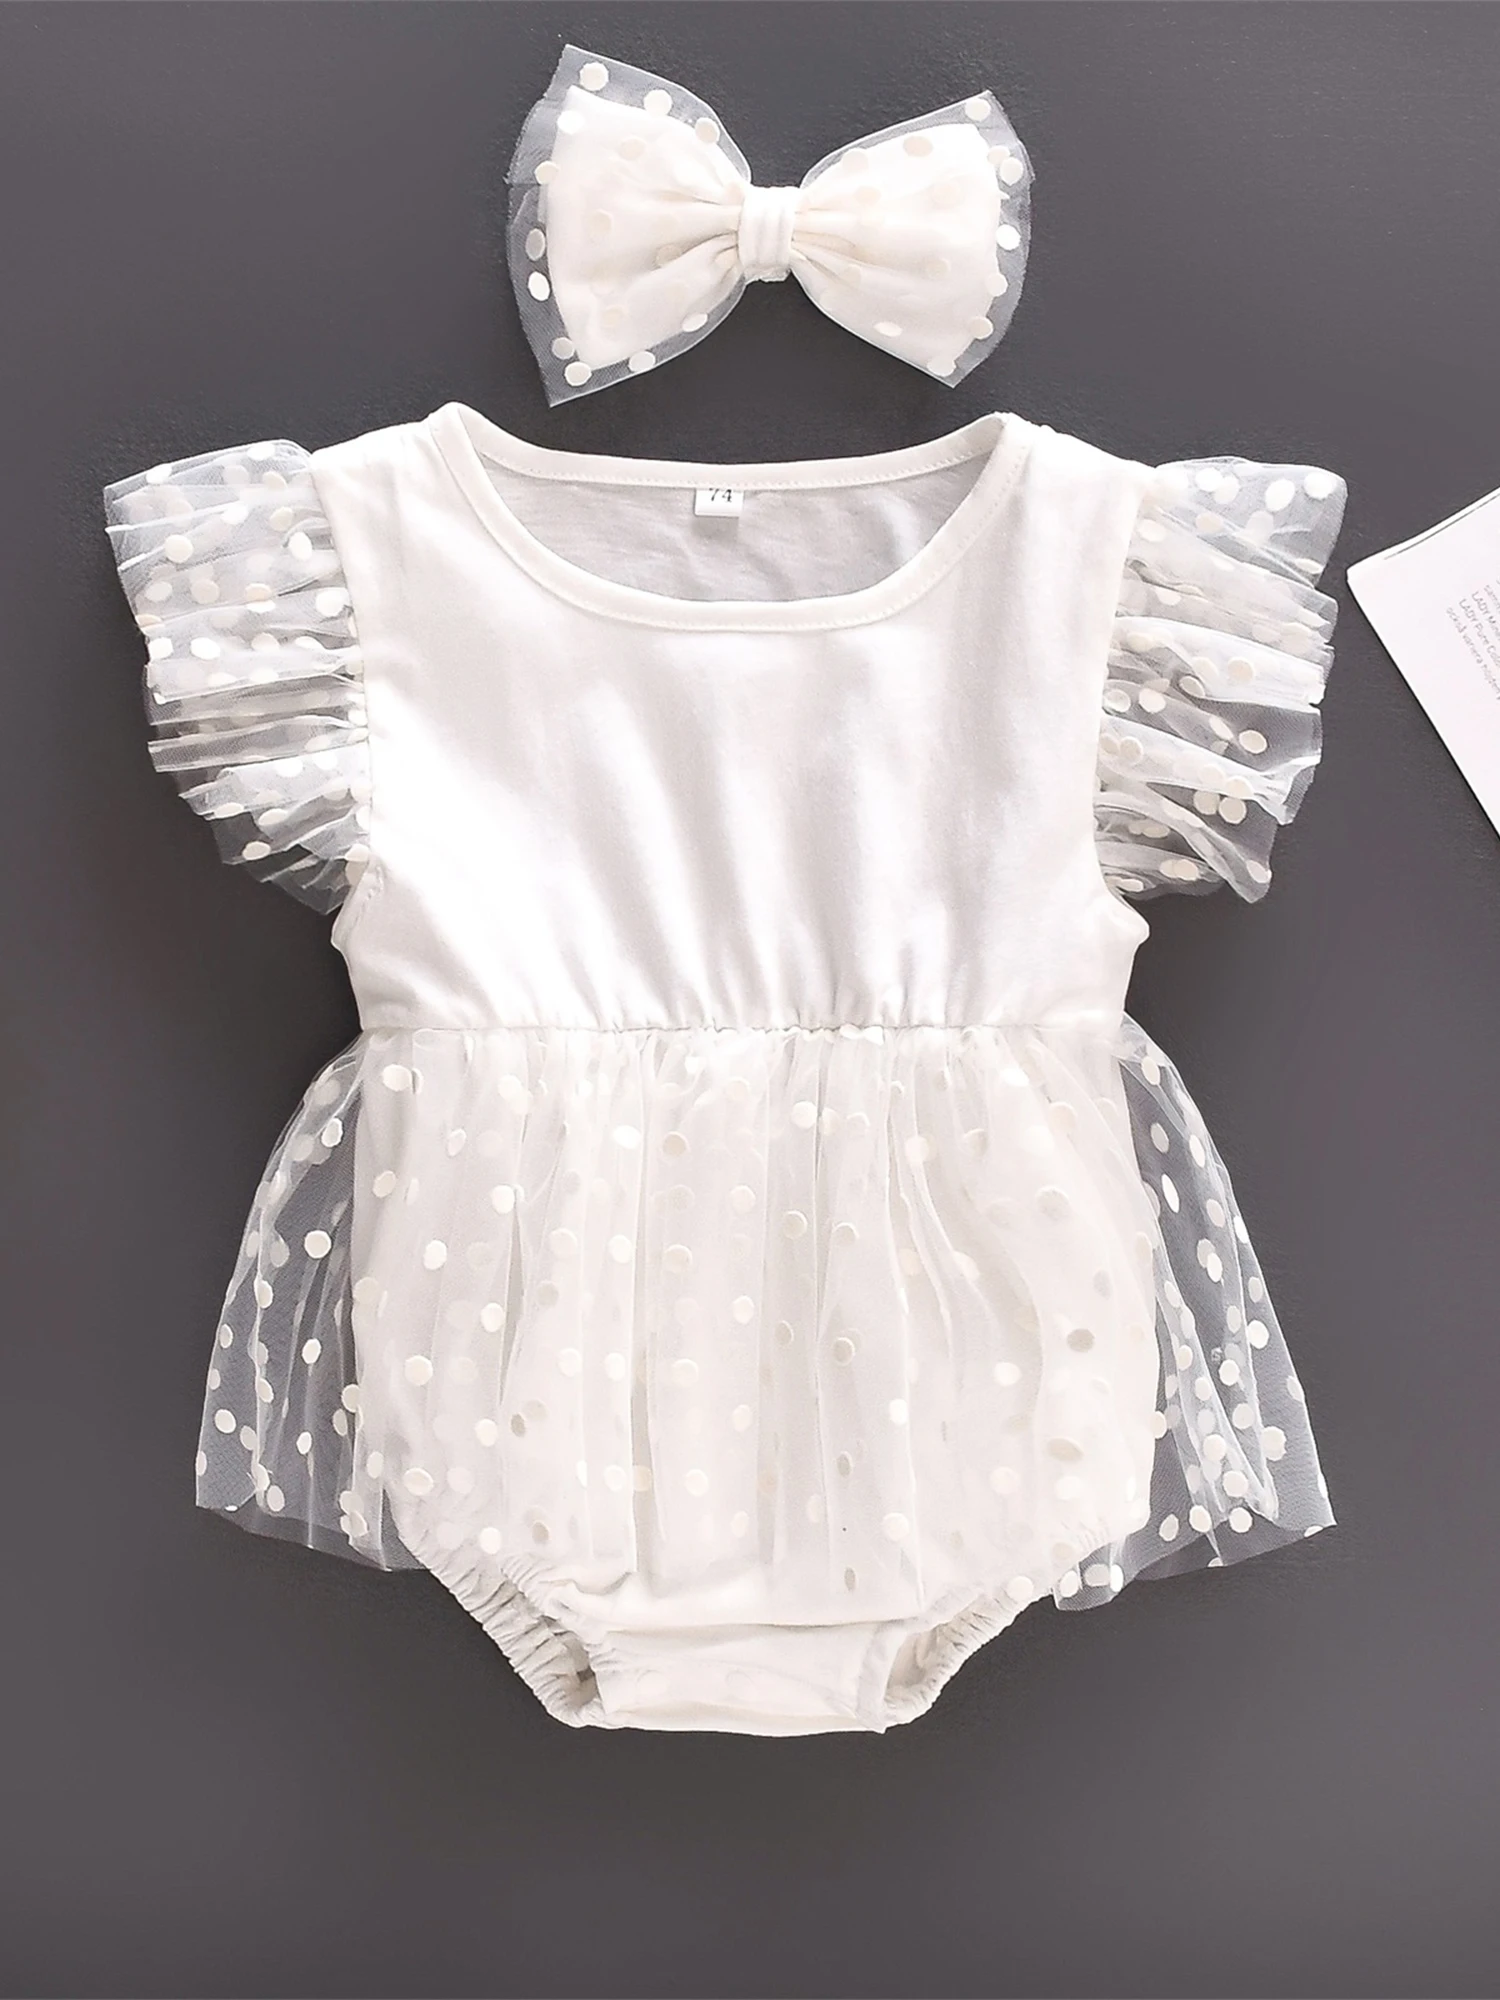 Очаровательное платье-комбинезон с принтом в горошек для новорожденных, фатиновое лоскутное шитье и повязка на голову с бантом для летних нарядов для маленьких девочек